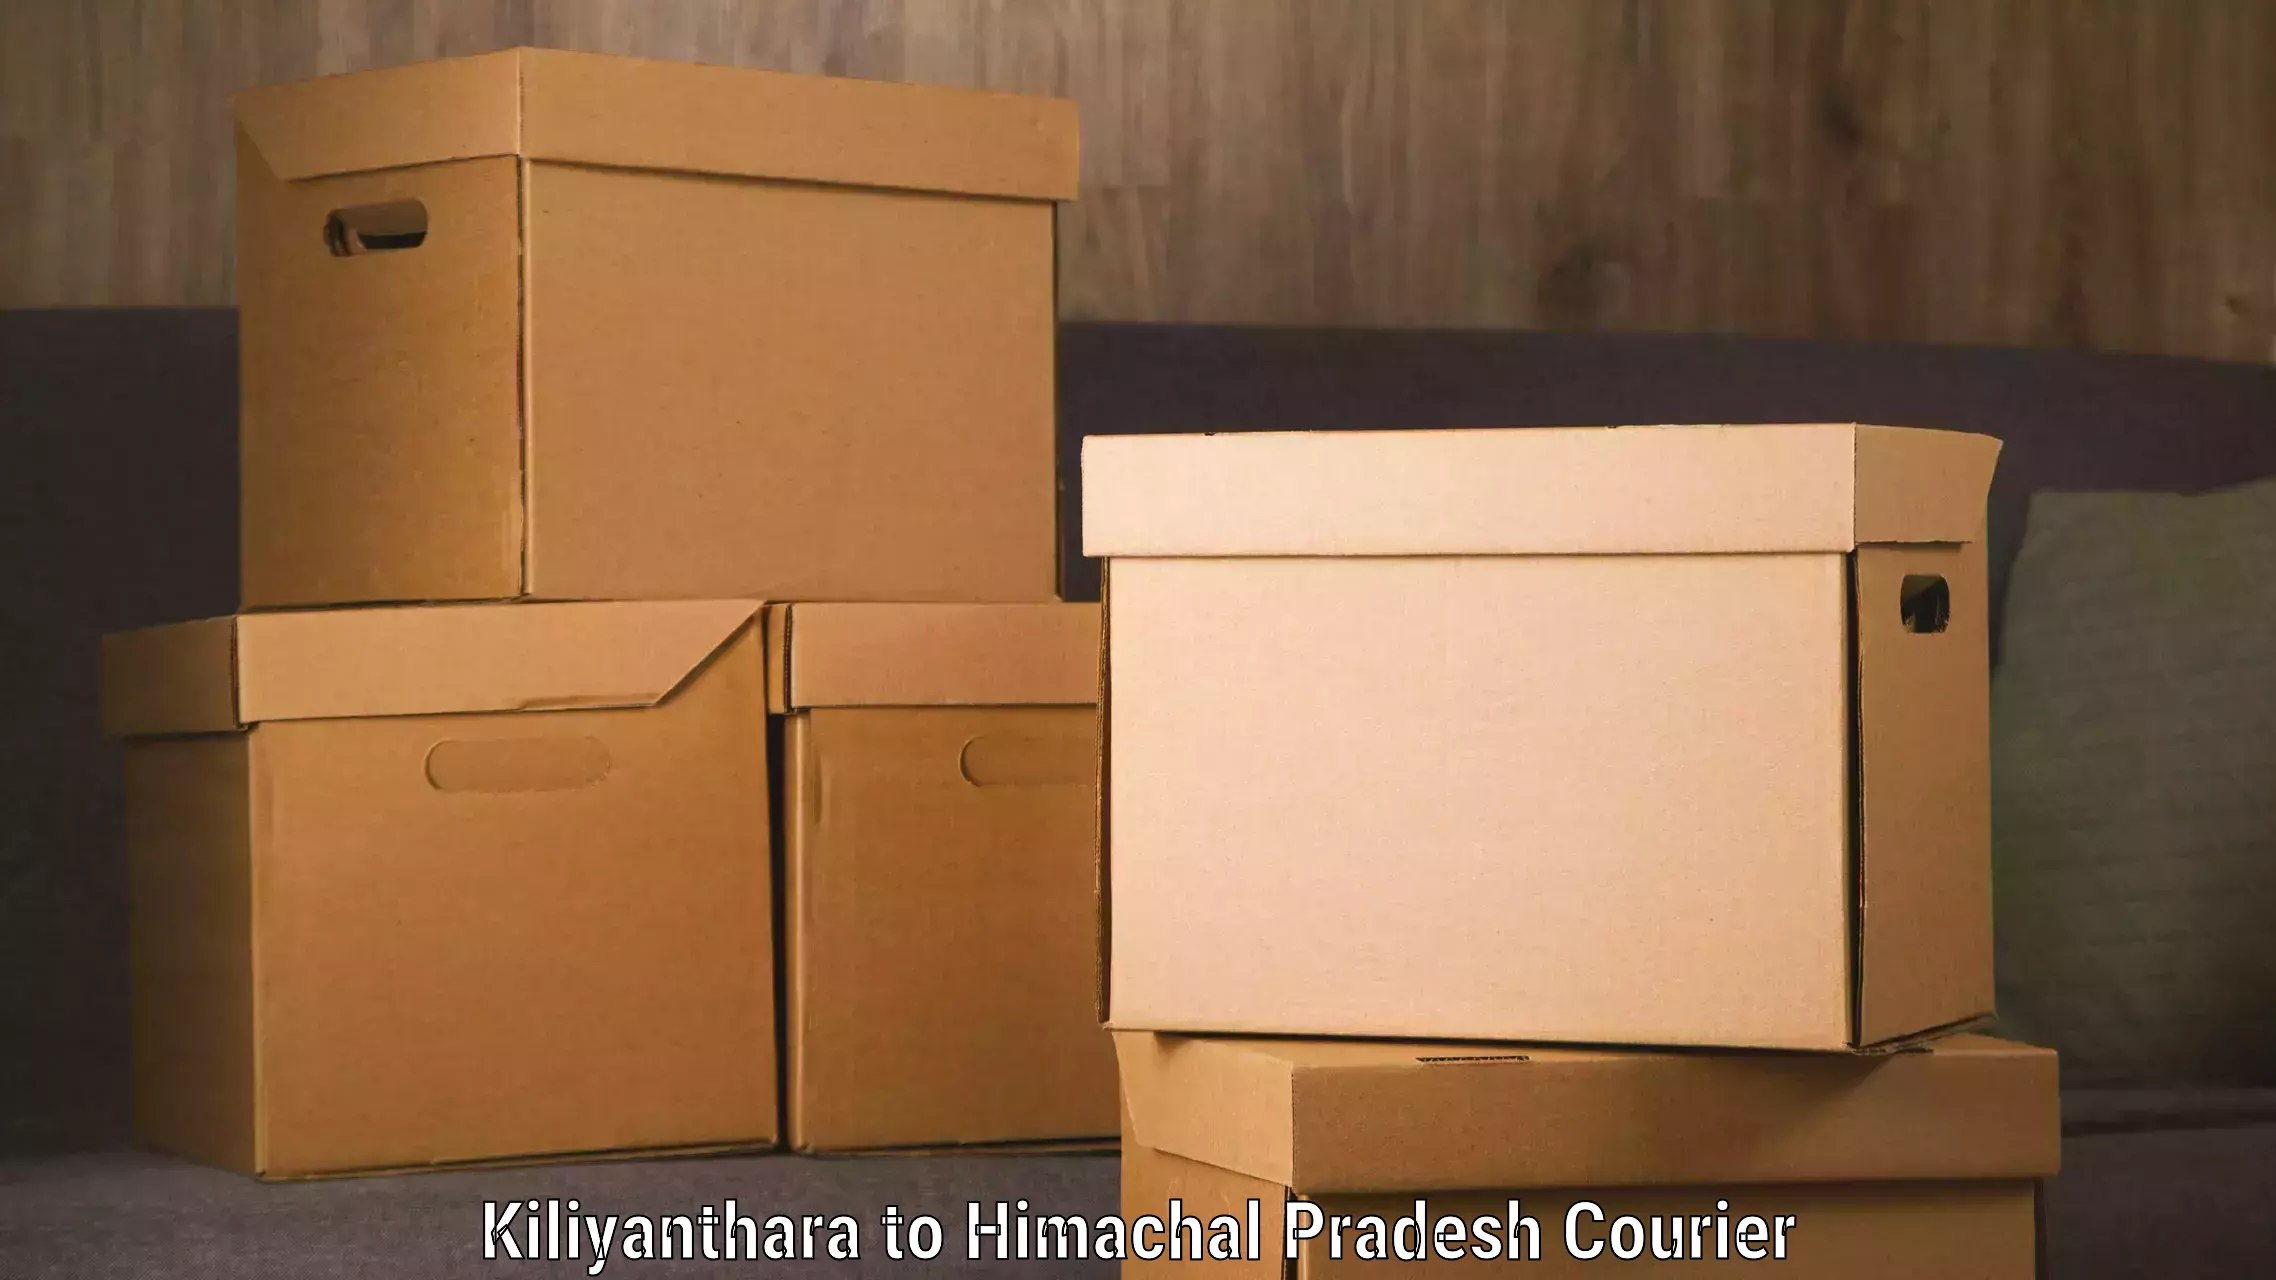 Express logistics service Kiliyanthara to Himachal Pradesh